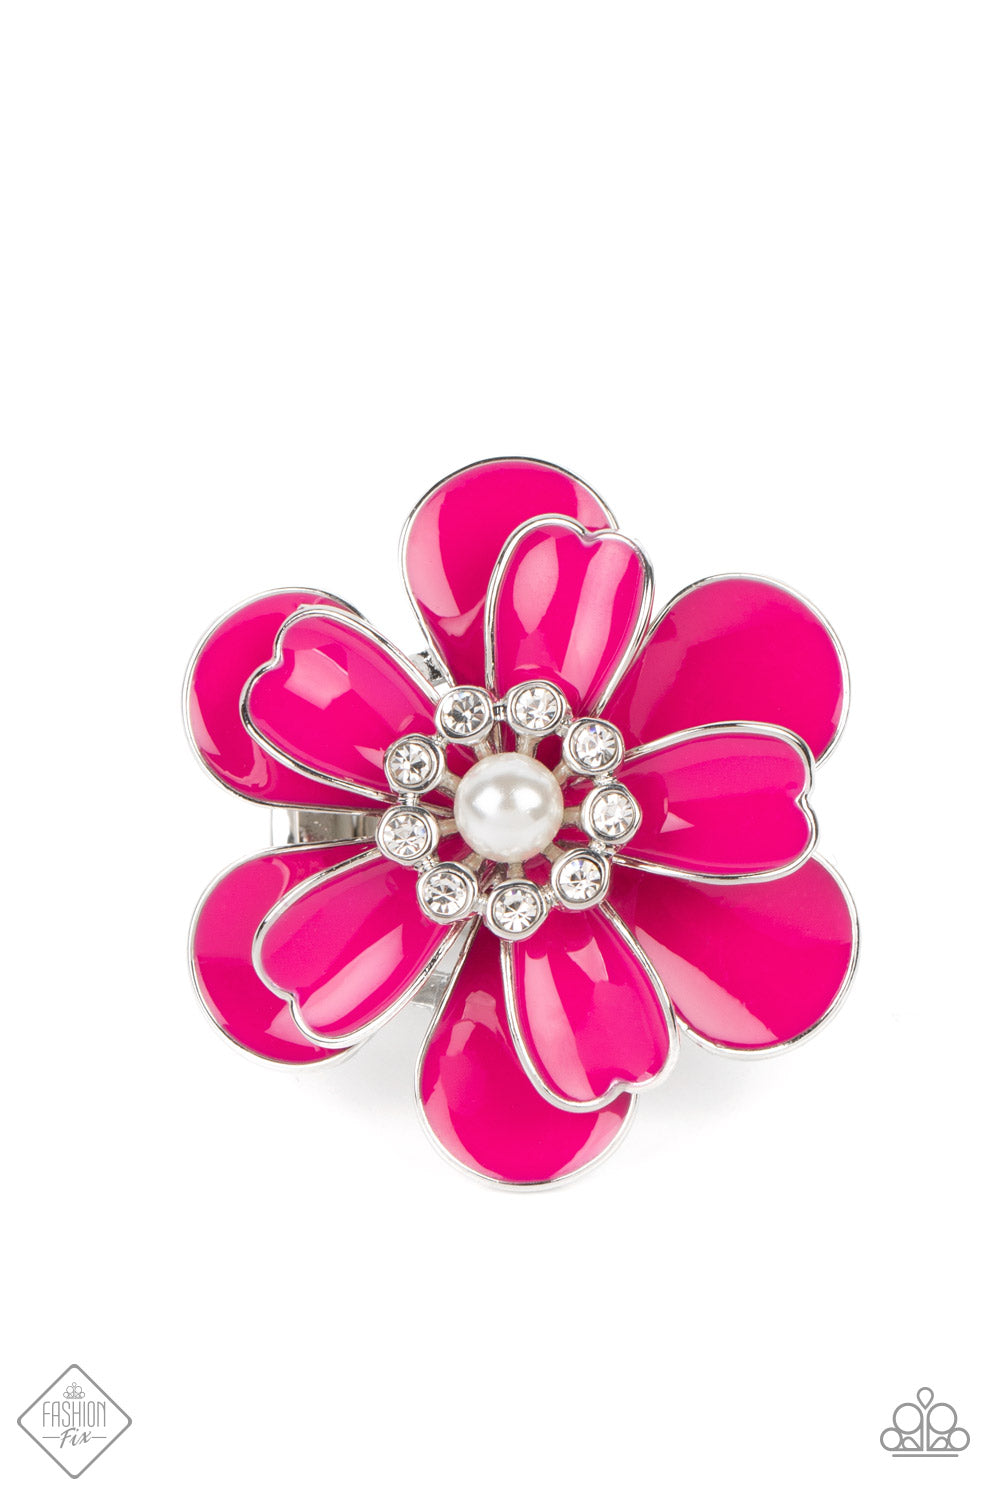 Paparazzi Budding Bliss - Pink Ring -September 2022 Glimpse of Malibu Fashion Fix - A Finishing Touch Jewelry